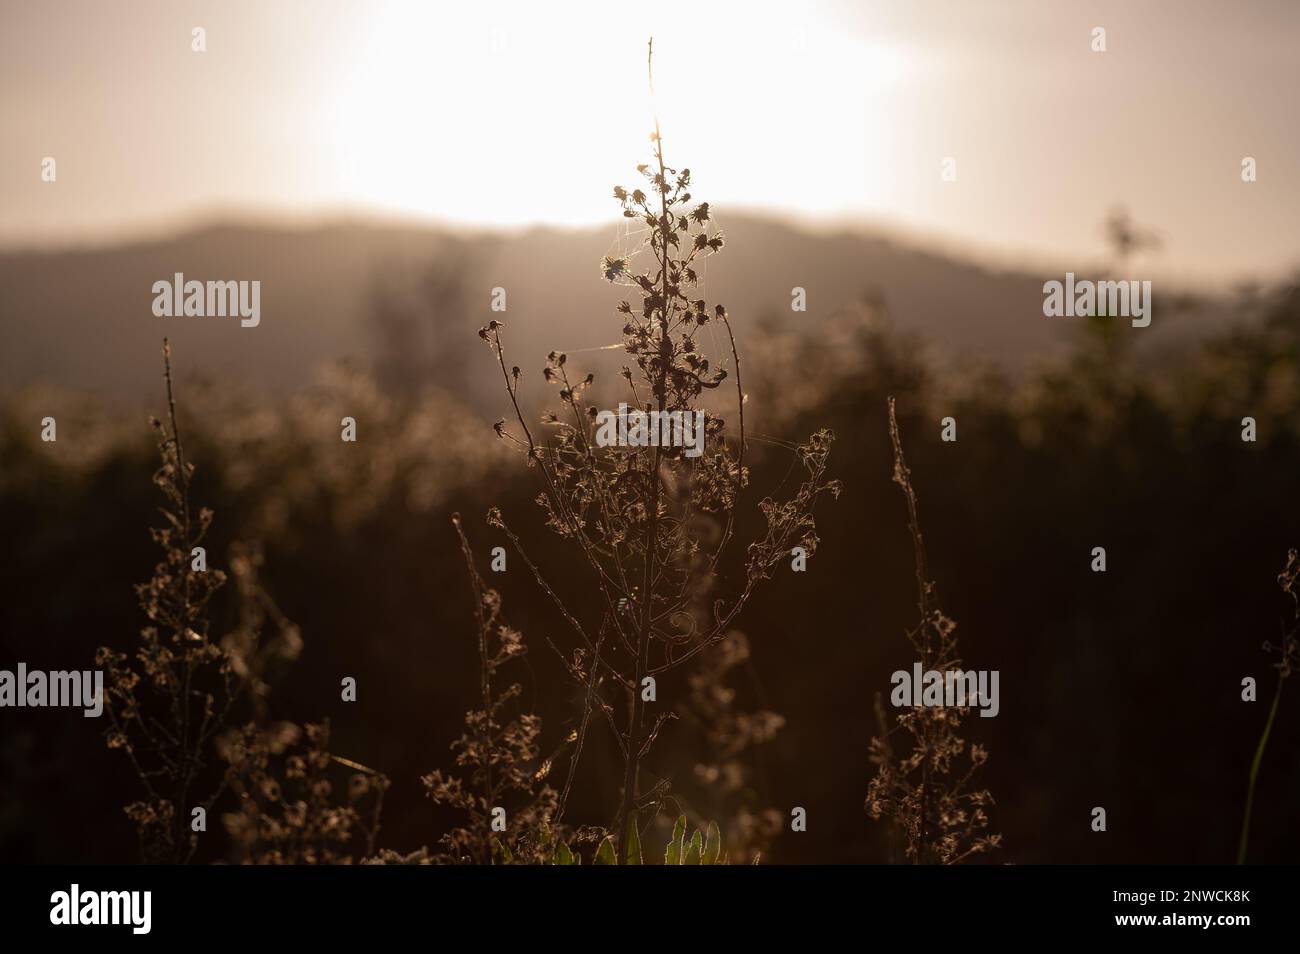 Silhouette d'un plant d'inule visqueuse aux fleurs séchées, contre-jour et coucher de soleil en arrière-Plan Stockfoto